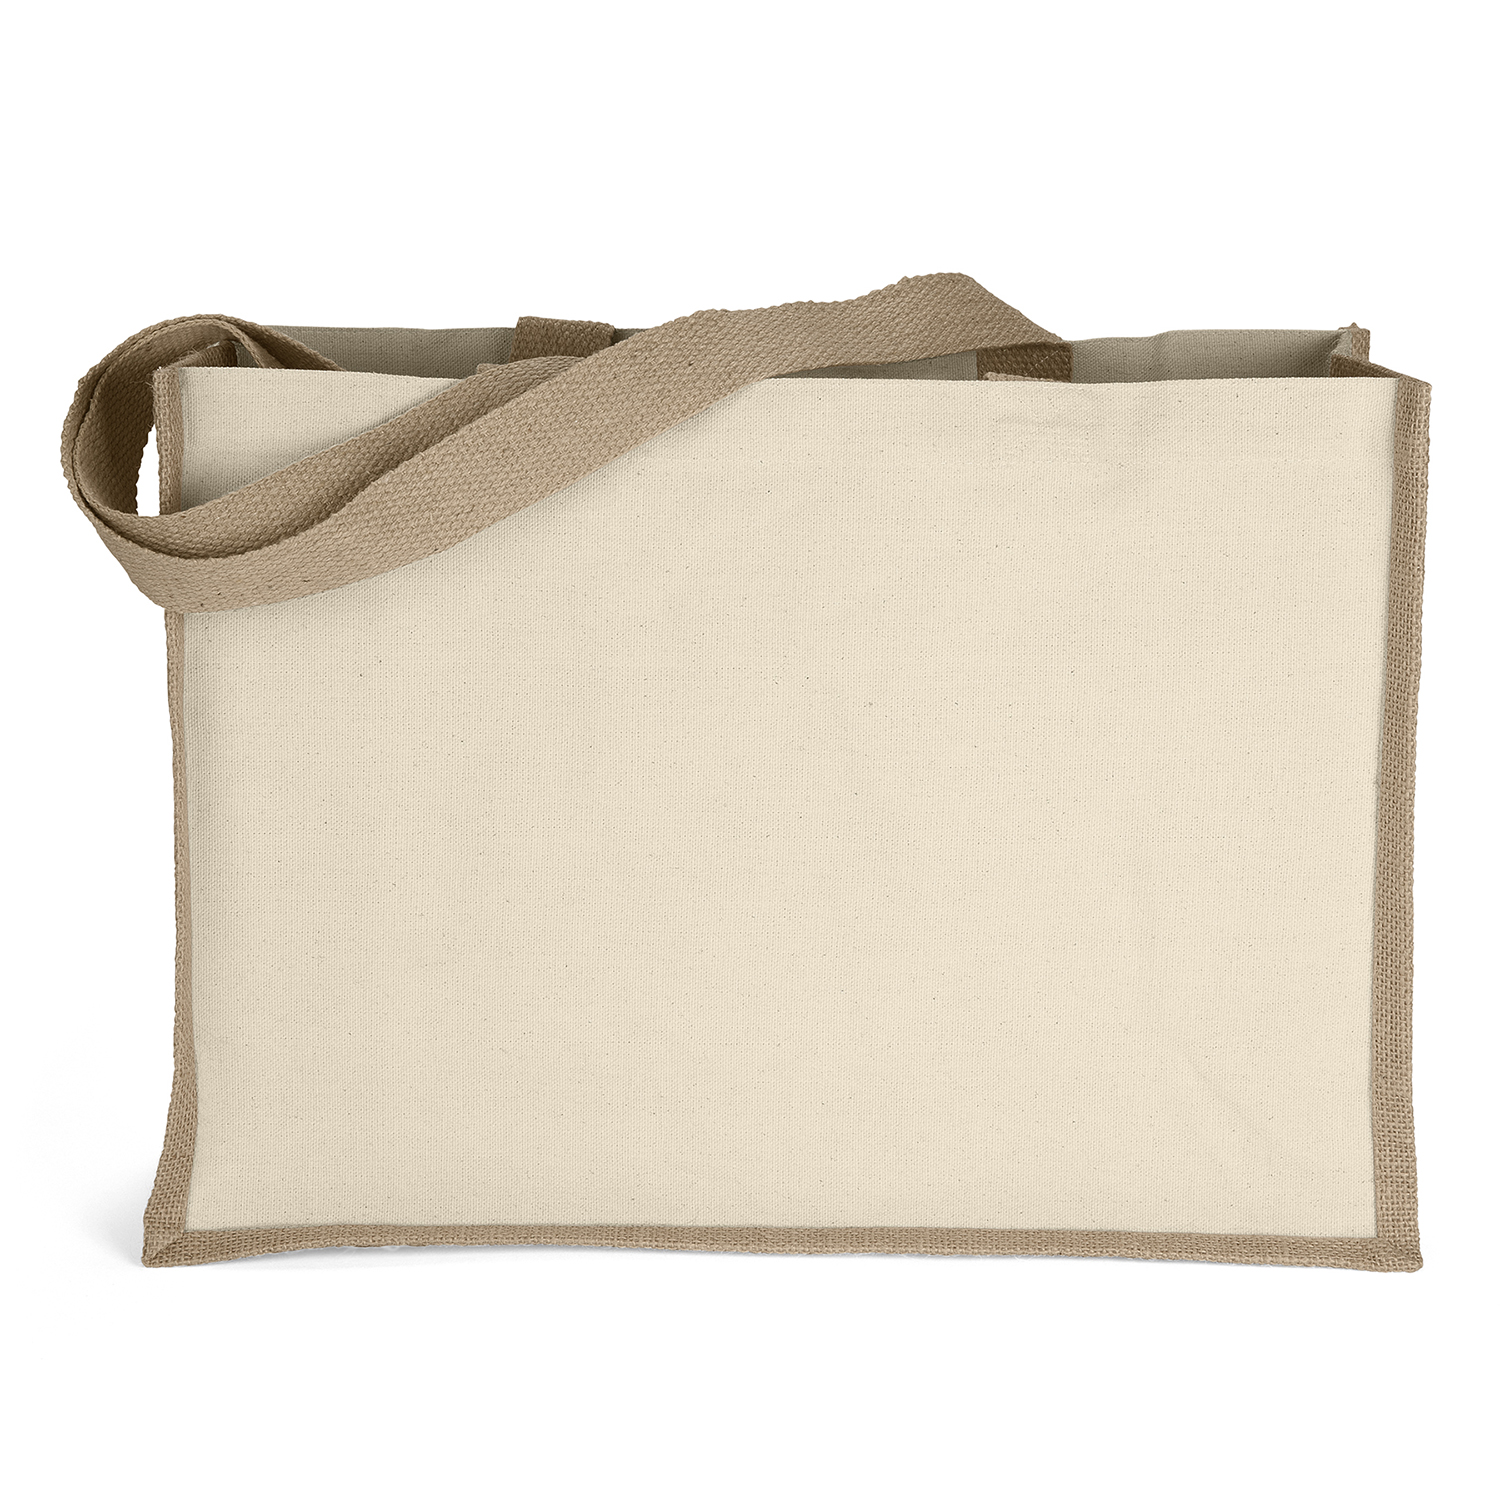 Burlap Fashion Bag Canvas, Tan, Medium – Janine's Boutique